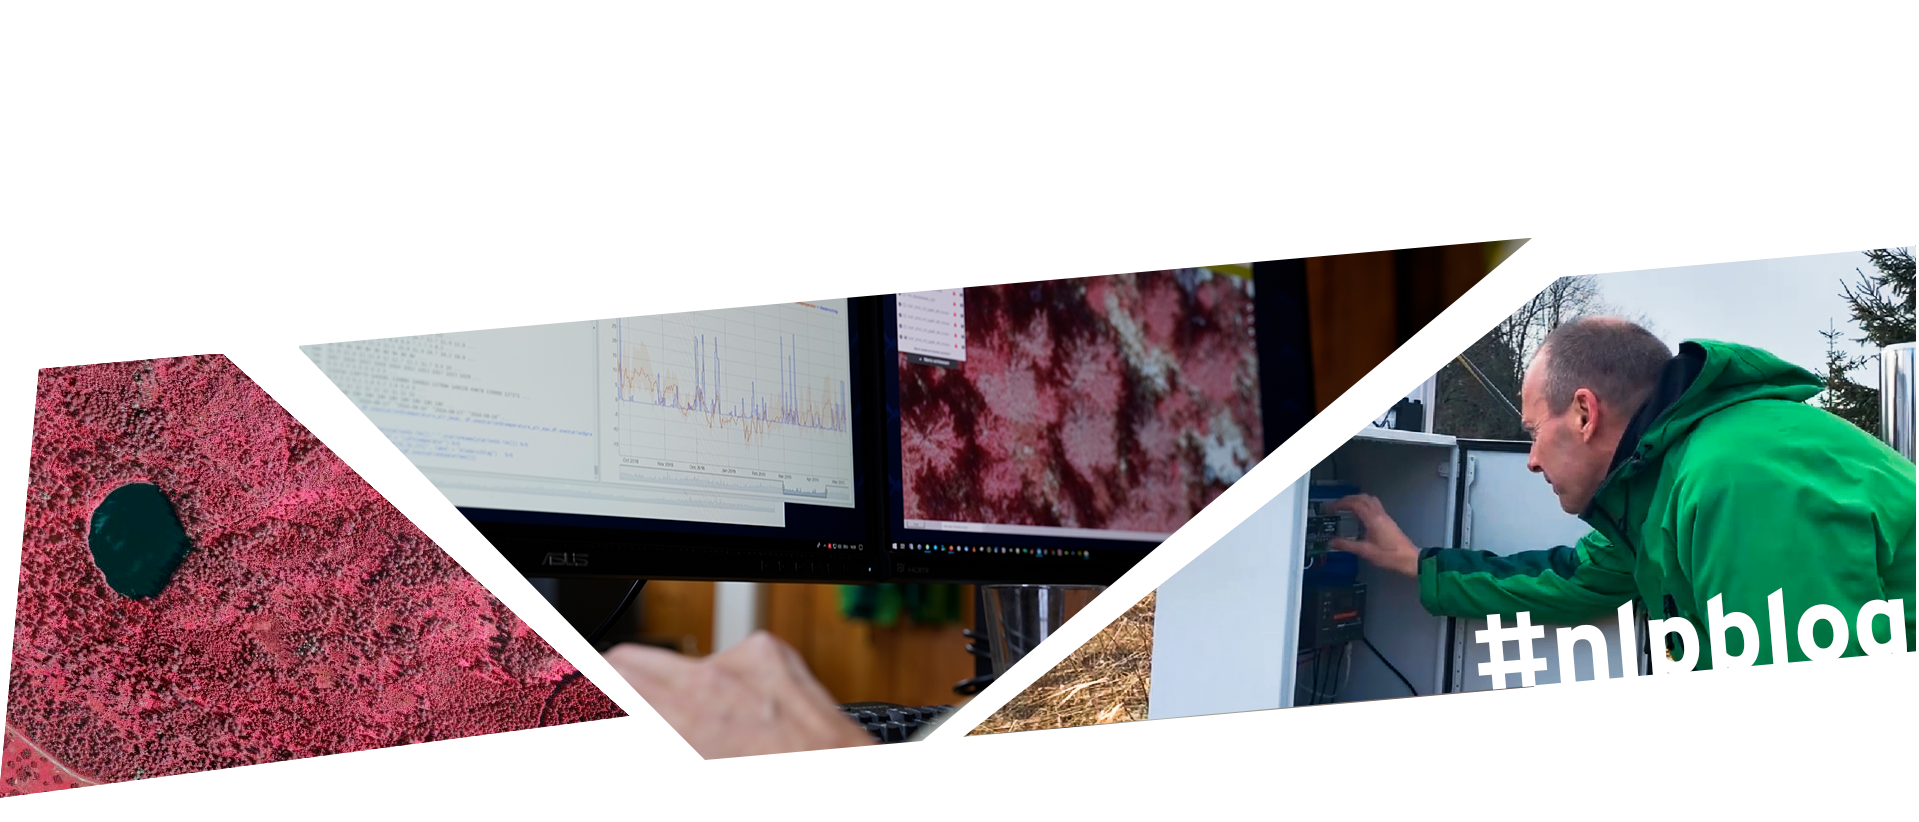 Bildcollage aus drei Bildern: Links: Rot eingefärbte Luftaufnahmen des Nationalparkgebiets. Mitte: Nahaufnahme zweier Bildschirme, sie zeigen Messdaten. Rechts: Ein Mann in grüner Jacke blickt in einen grauen Kasten, in dem elektronische Messgeräte angebracht sind.